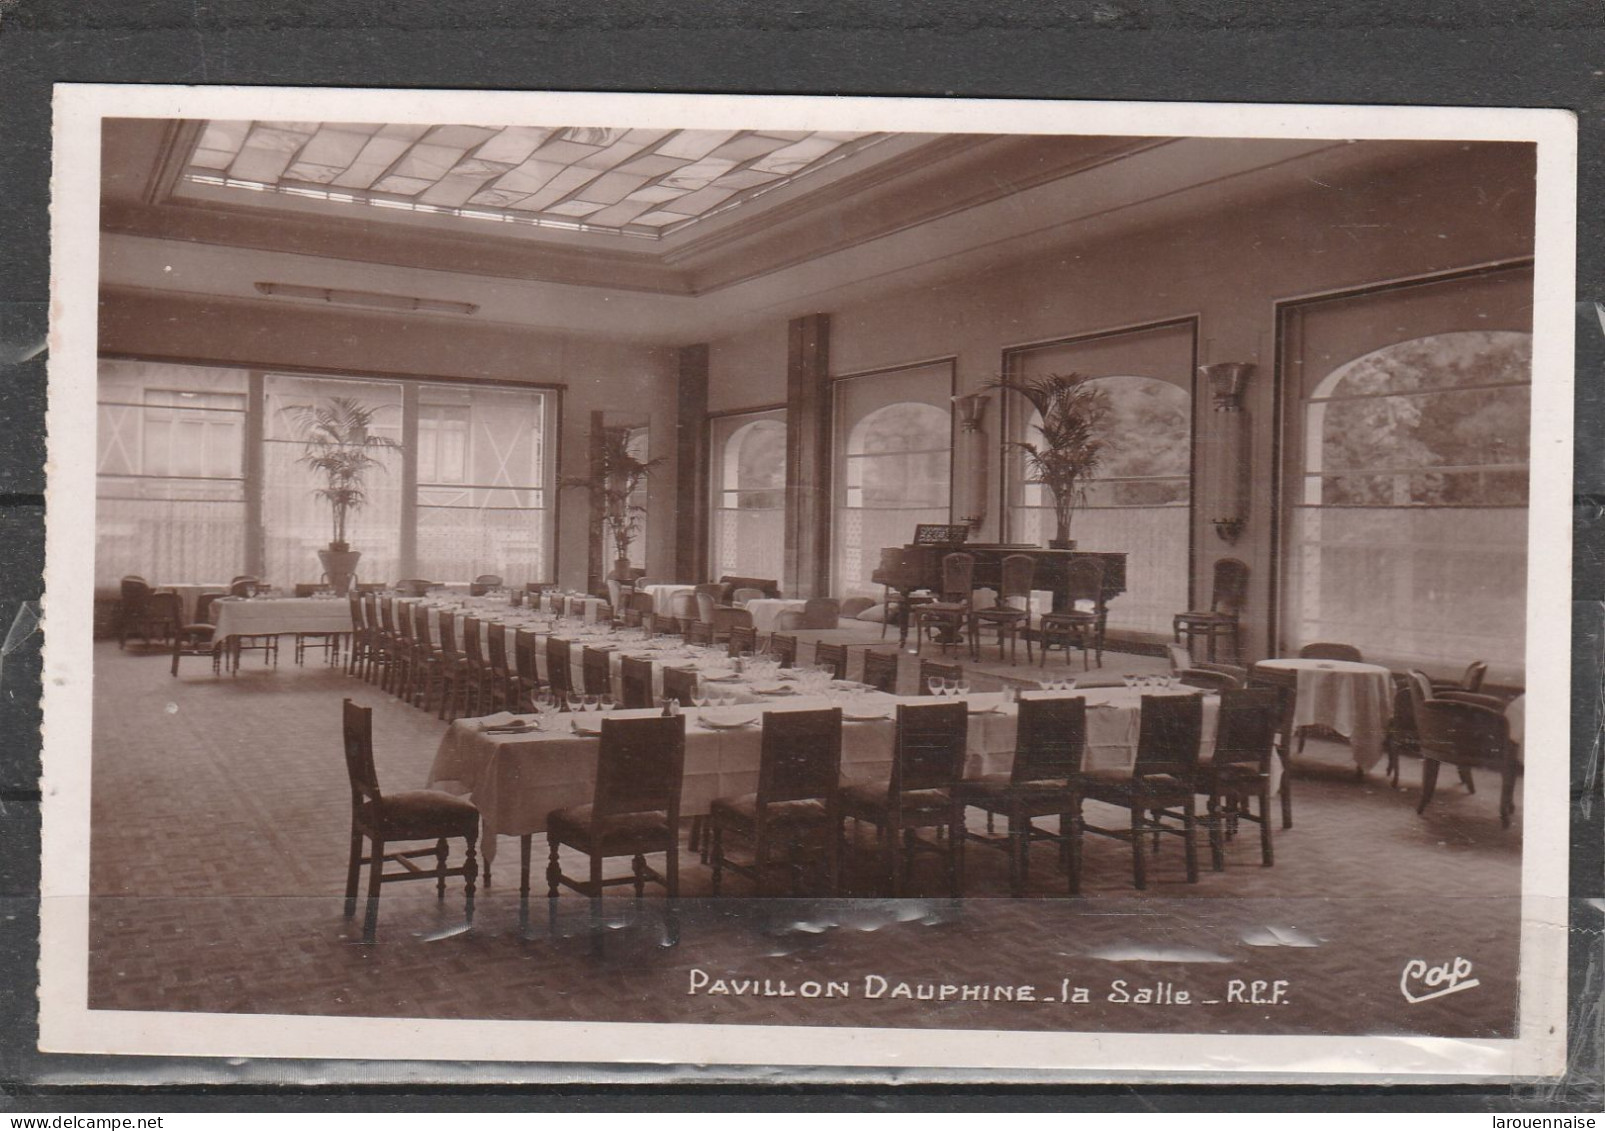 75016 - PARIS - Pavillon Dauphine - La Salle - R.C.F. - Pubs, Hotels, Restaurants